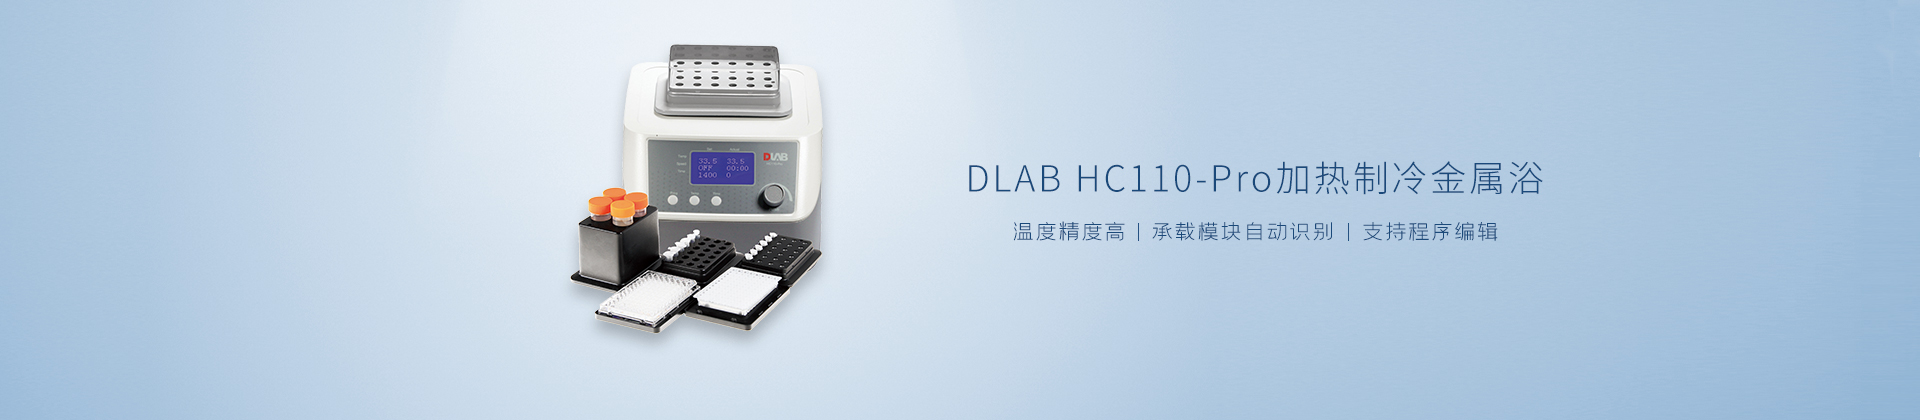 DLAB HC110-Pro加热制冷金属浴